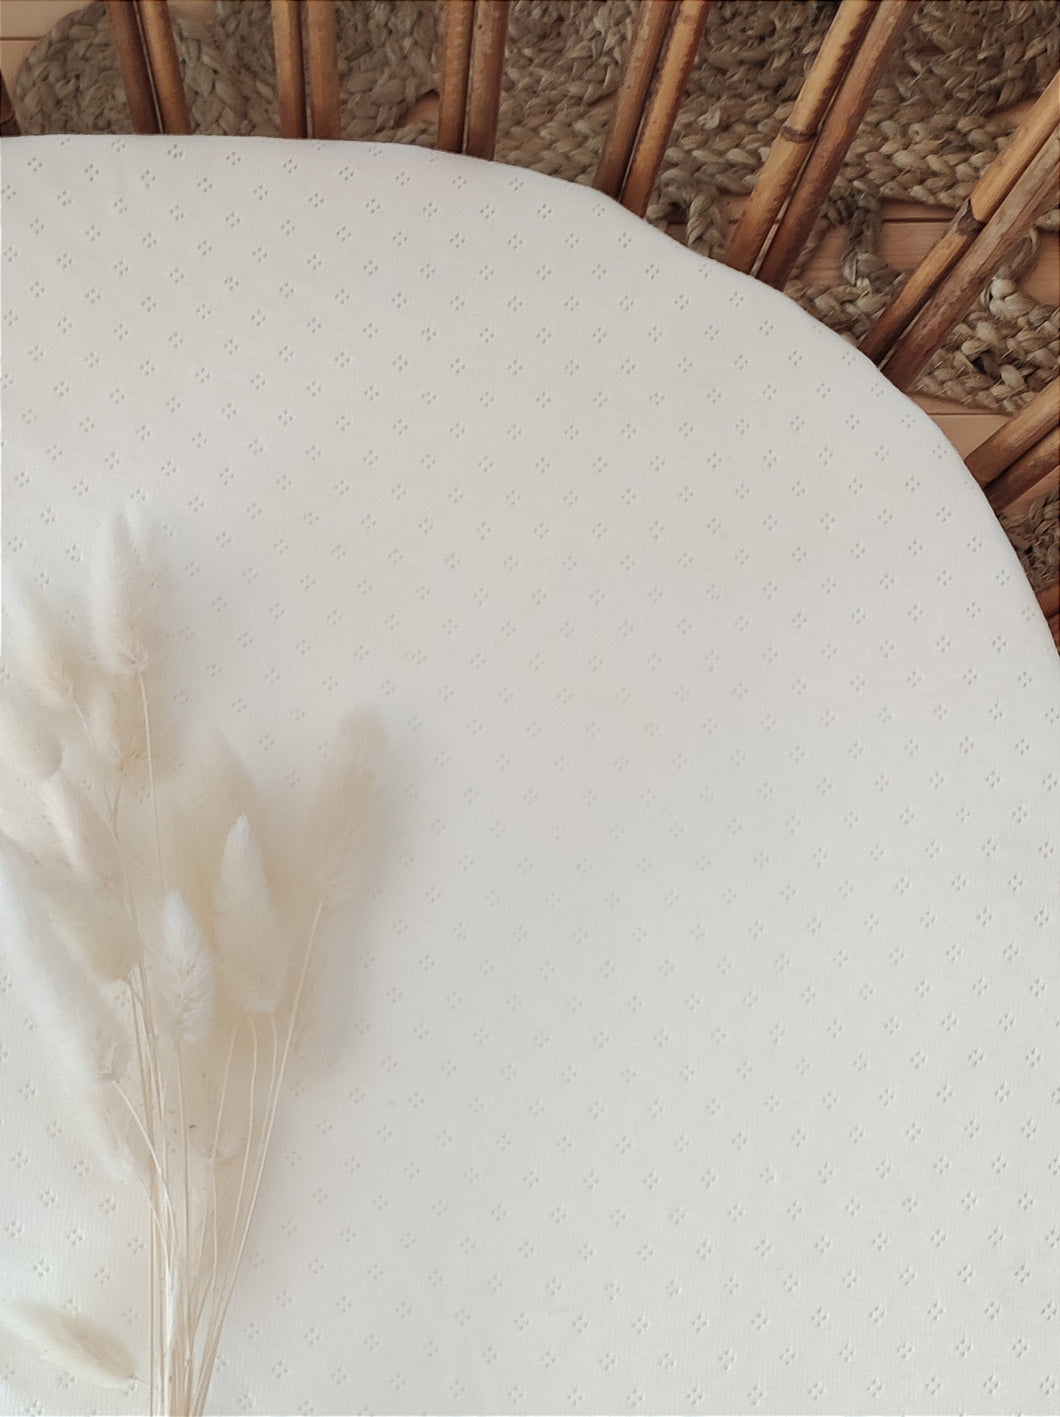 Drap housse en jersey de coton blanc ajouré pour matelas berceau bébé 40 x 80 et 50 x 90 cm fabriqué en France par Les p'tites Merveilles de Bérénice